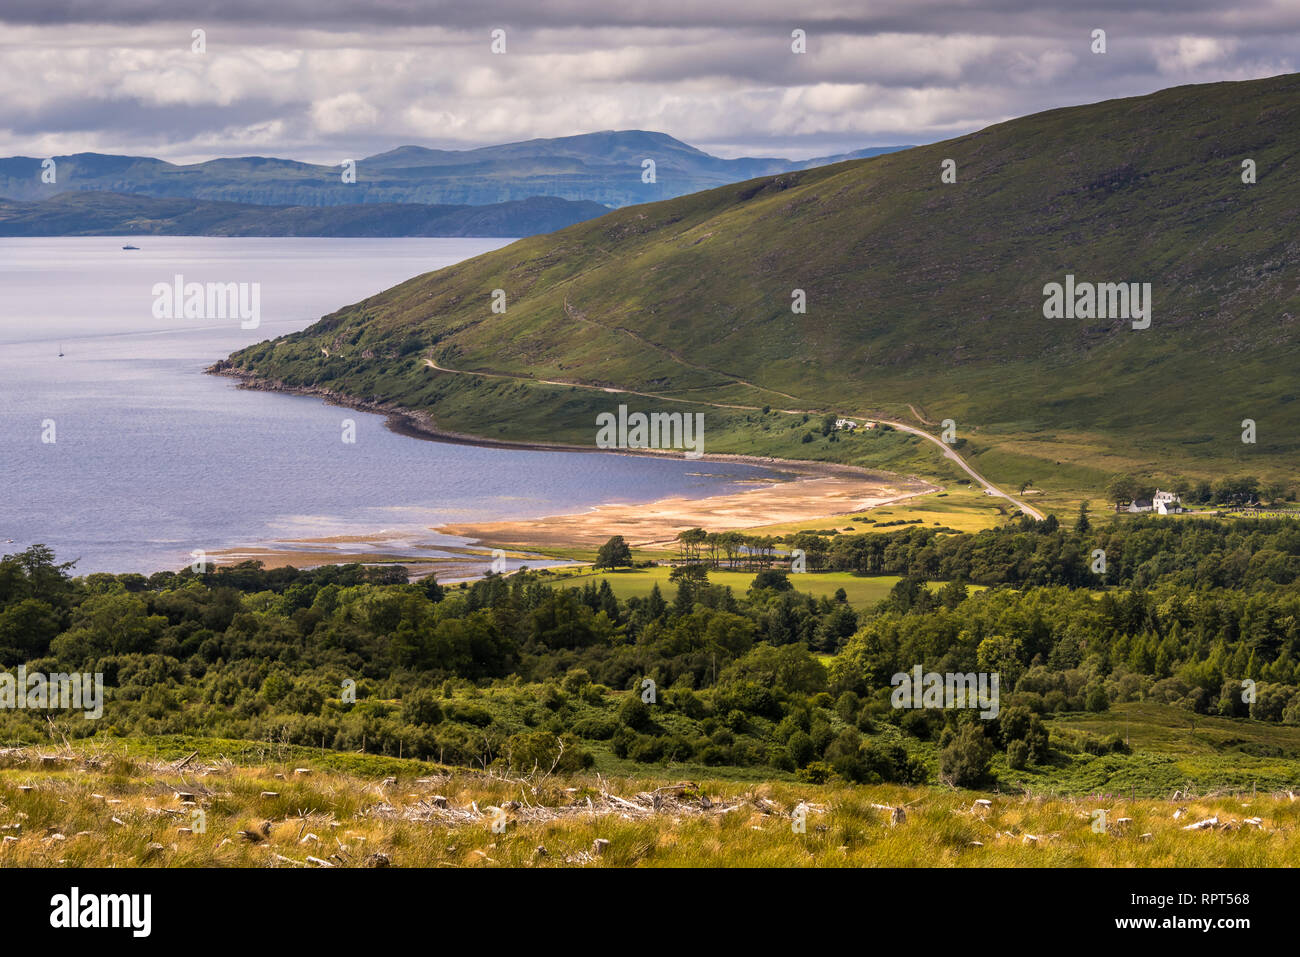 Typische Landschaft mit Coast, Häuser und Weiden auf der gälischen Halbinsel Applecross, Strathcarron, Innere Hebriden, Schottland, Großbritannien Stockfoto